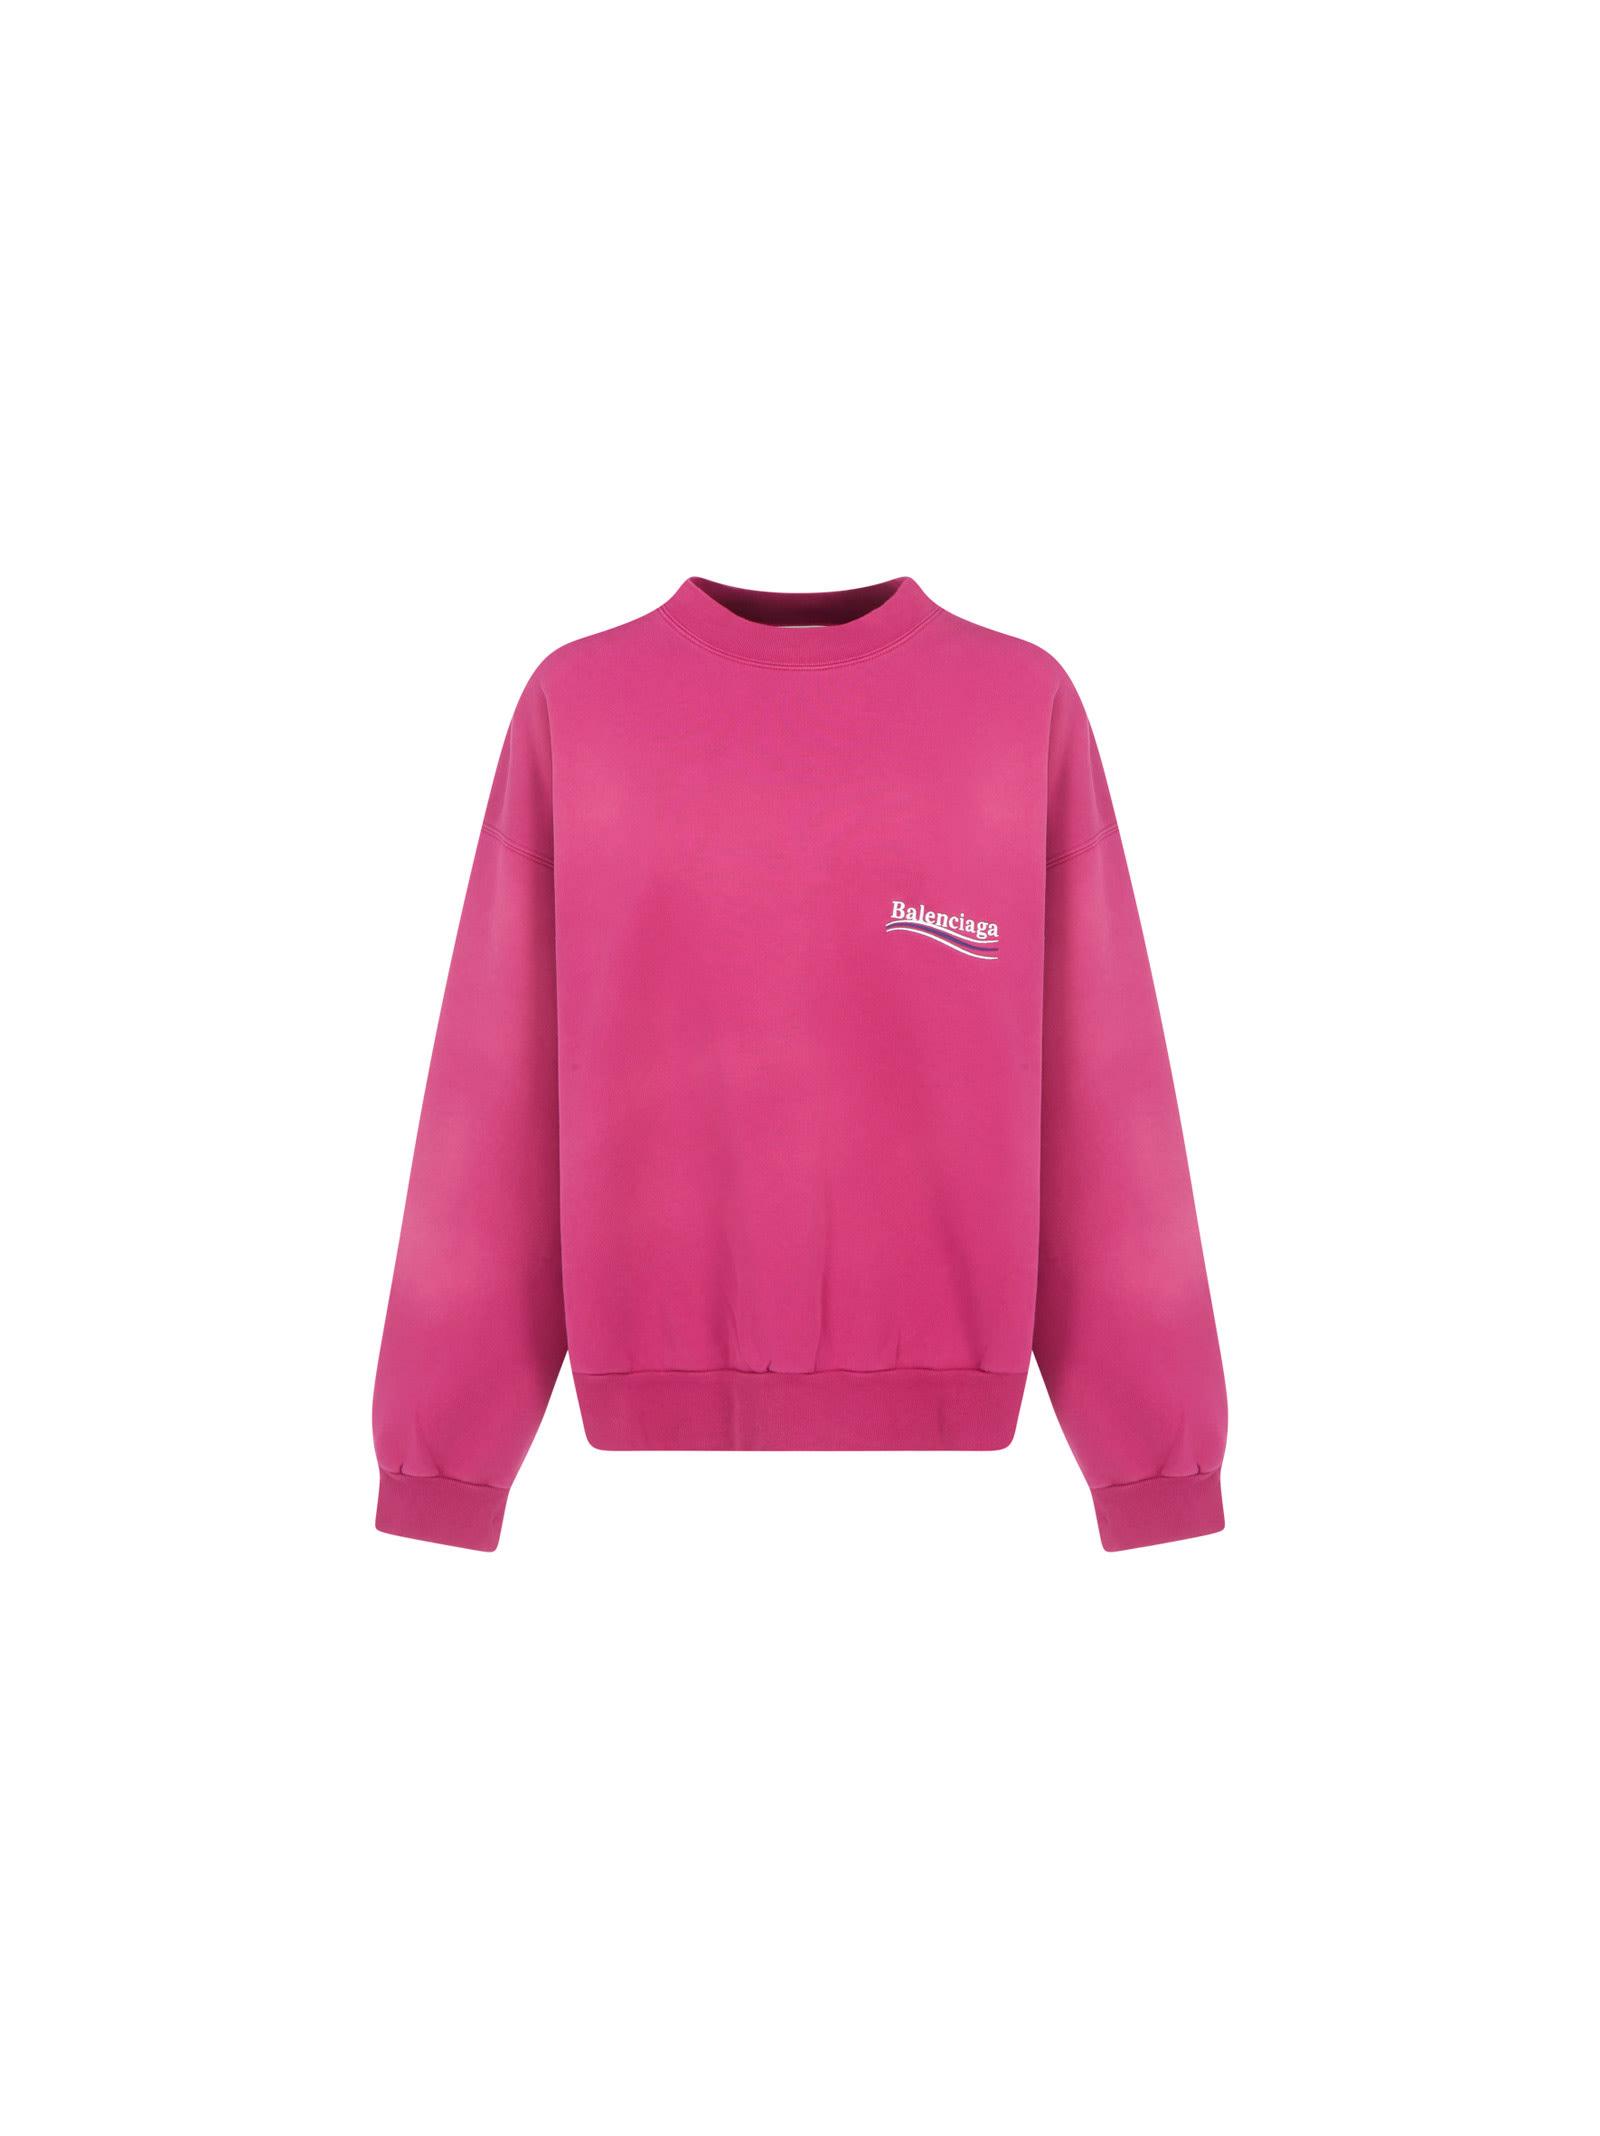 Balenciaga Sweatshirt in Pink | Lyst